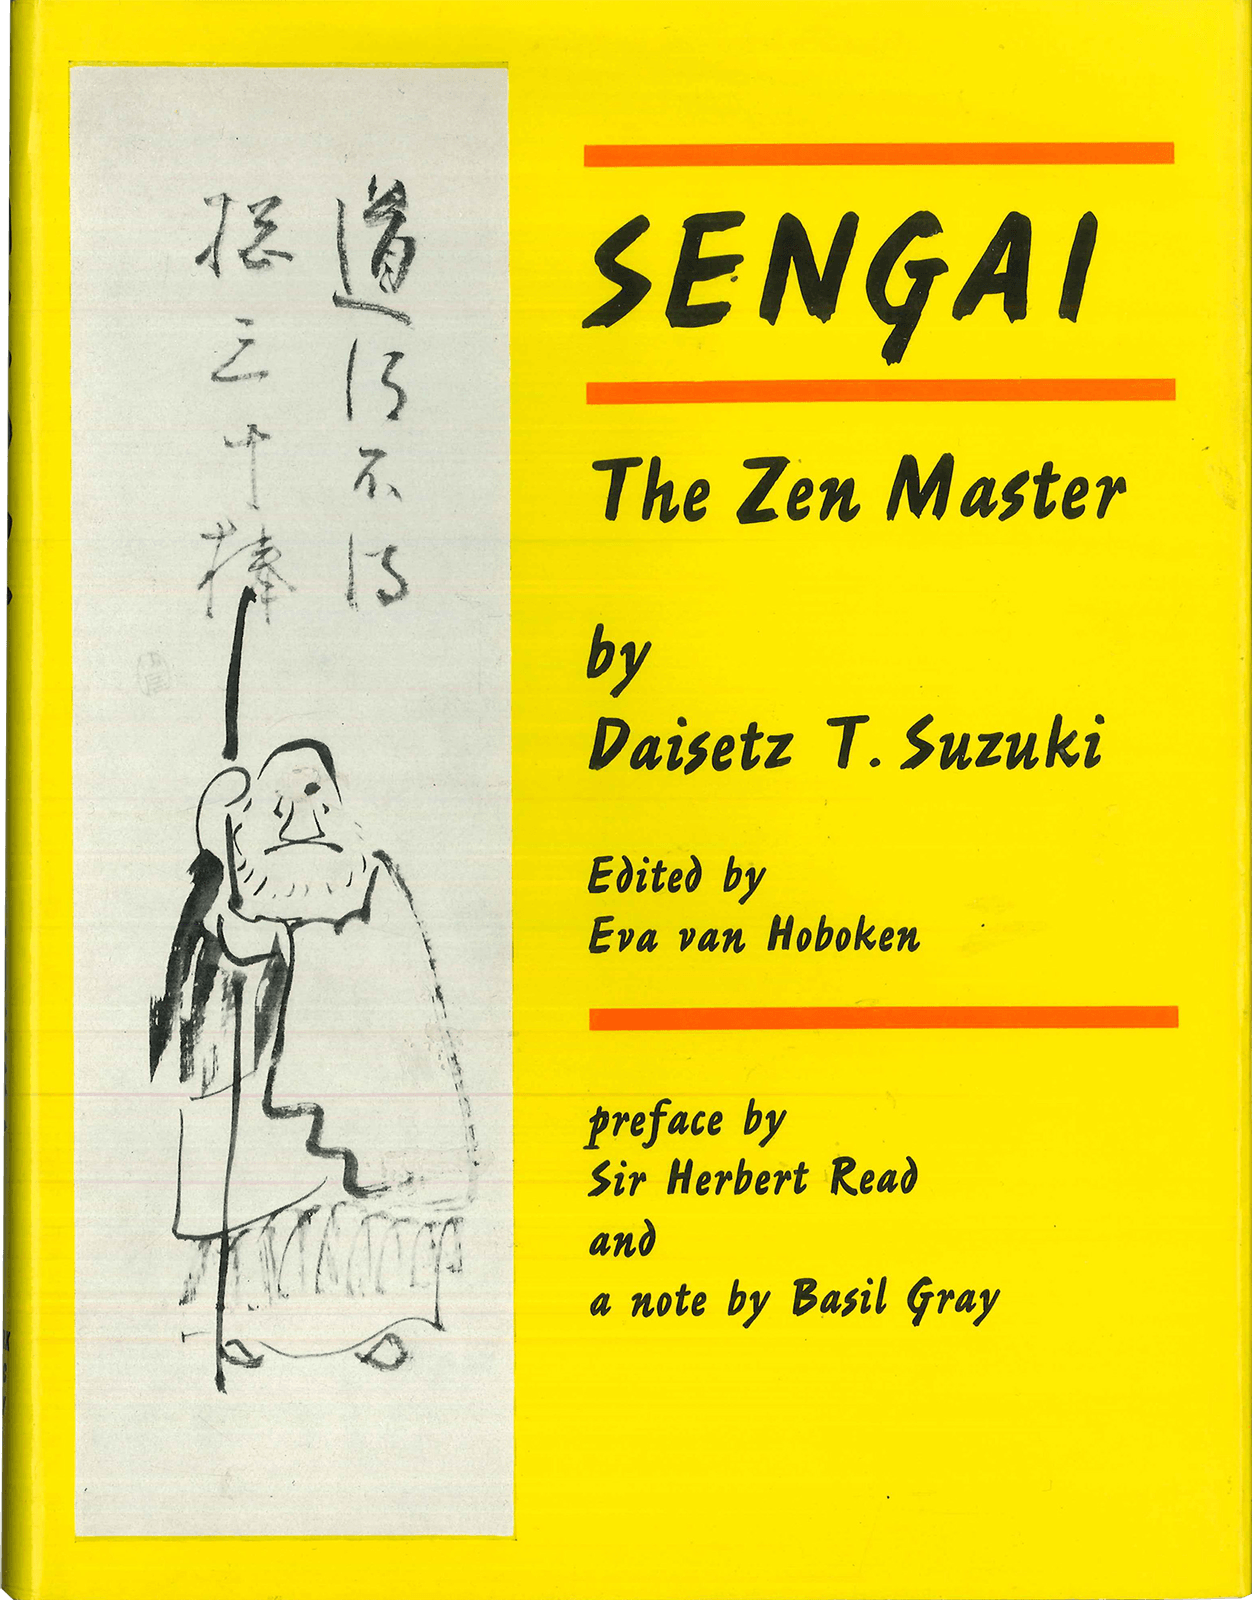 "Sengai, The Zen Master," 1971